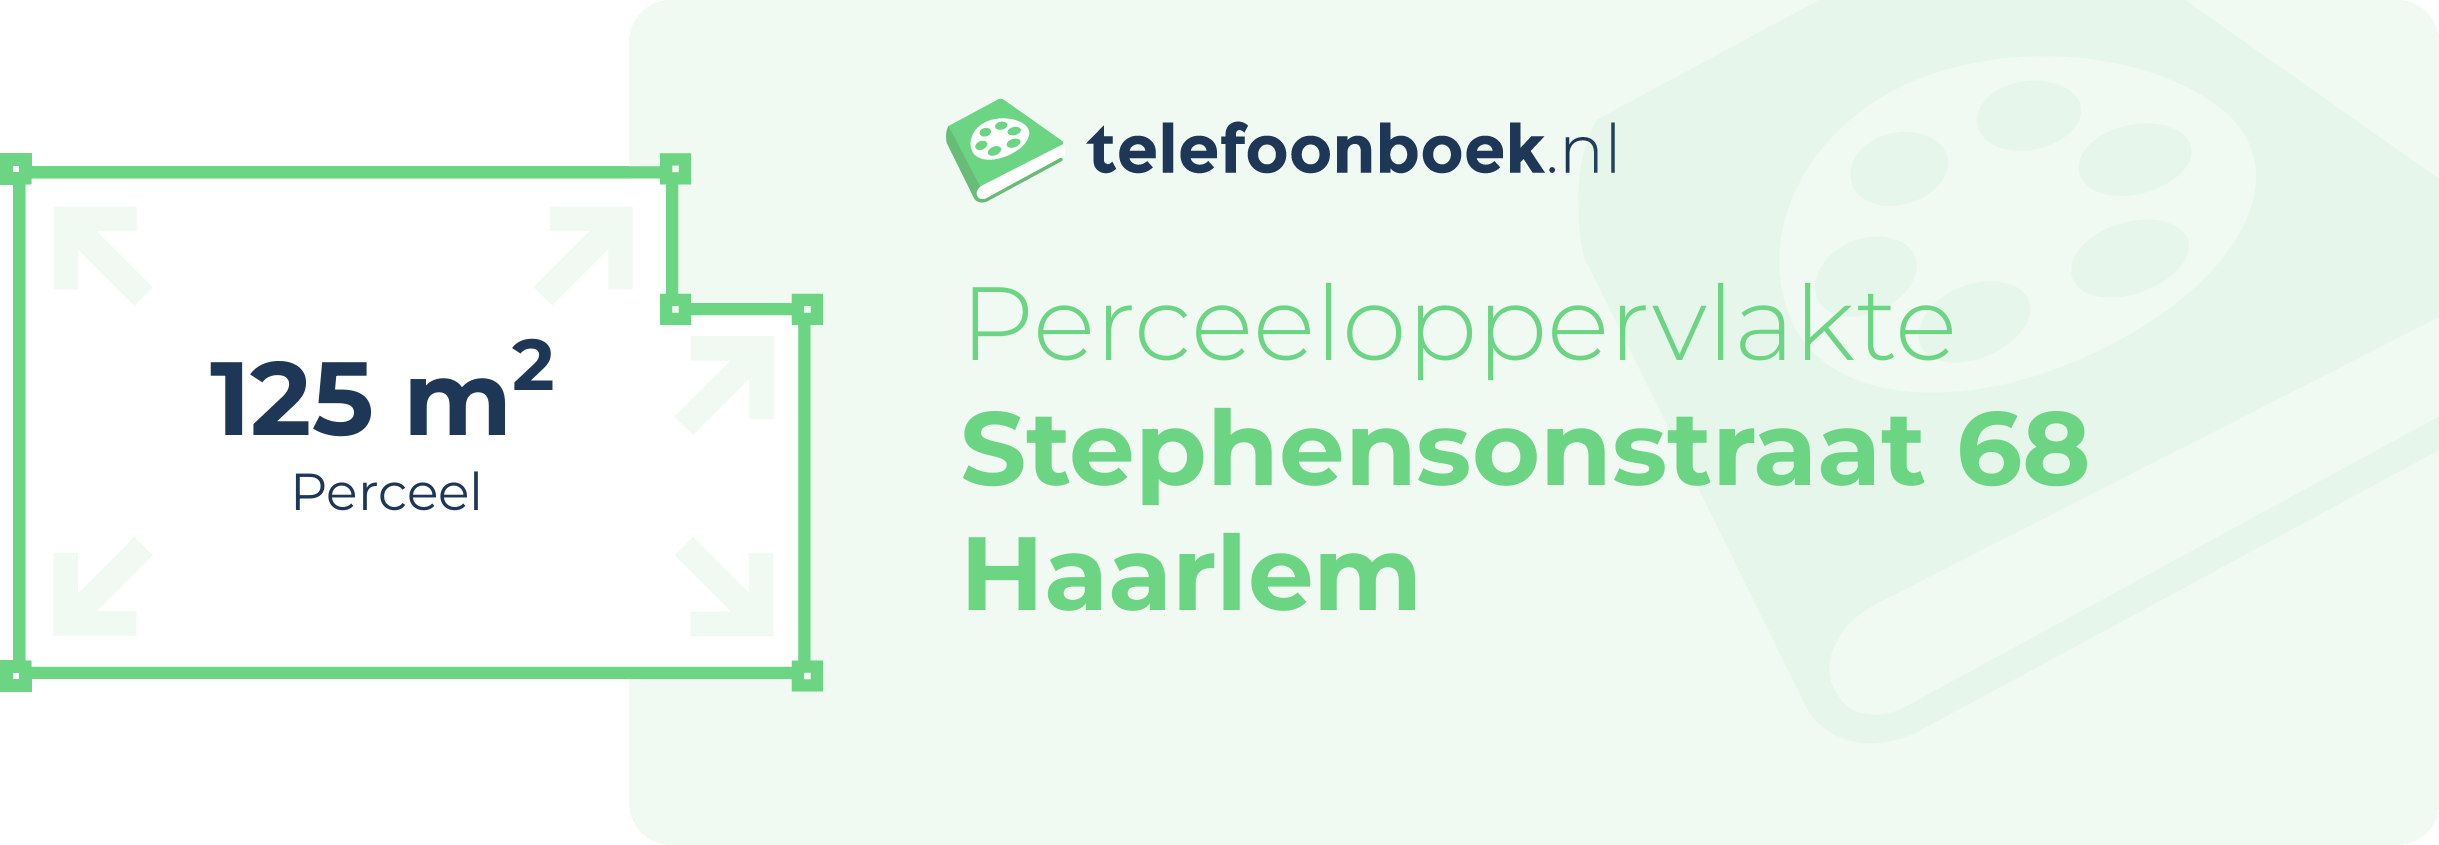 Perceeloppervlakte Stephensonstraat 68 Haarlem